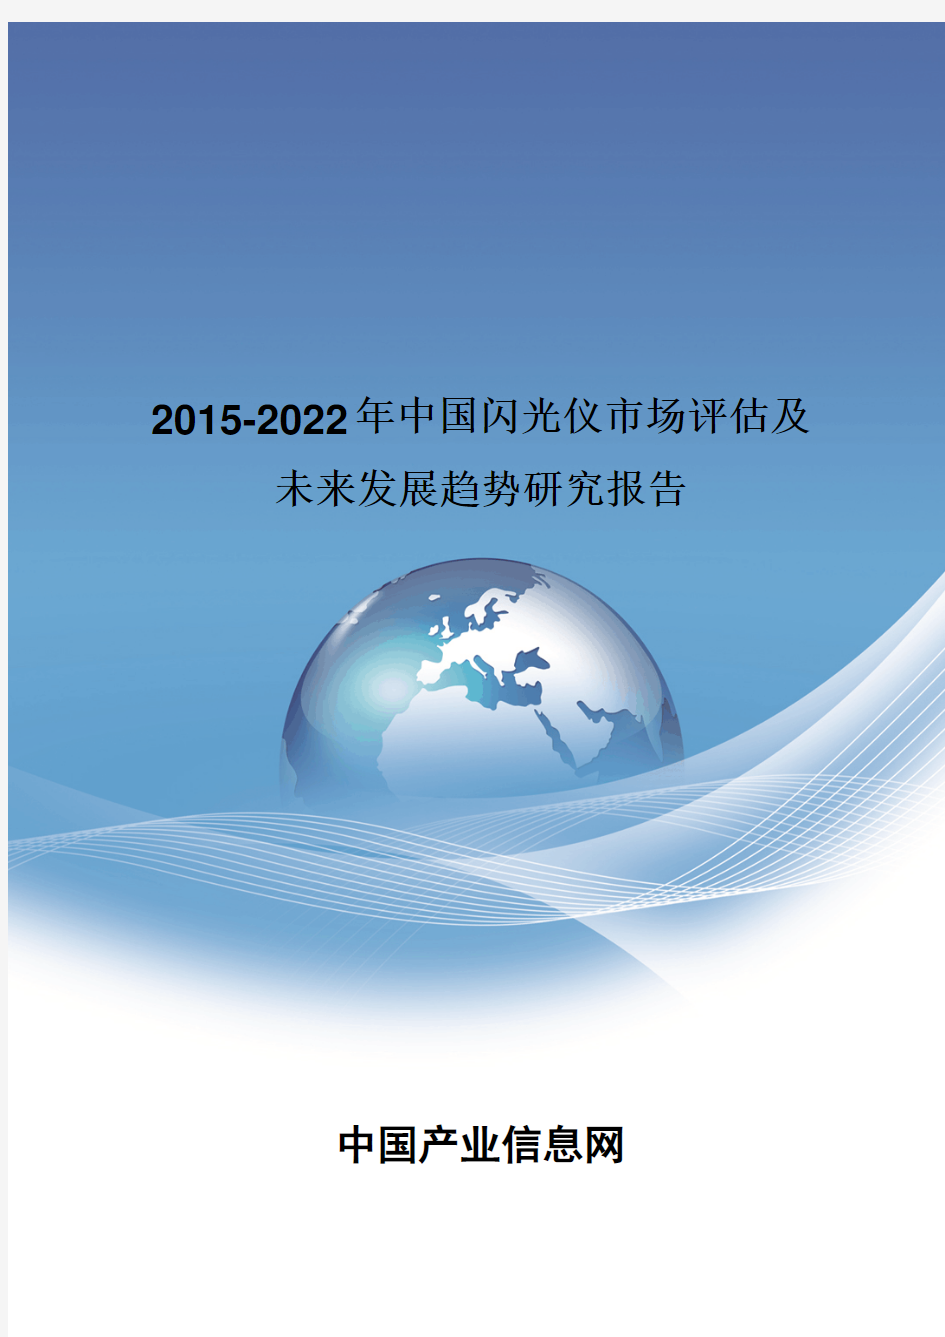 2015-2022年中国闪光仪市场评估报告